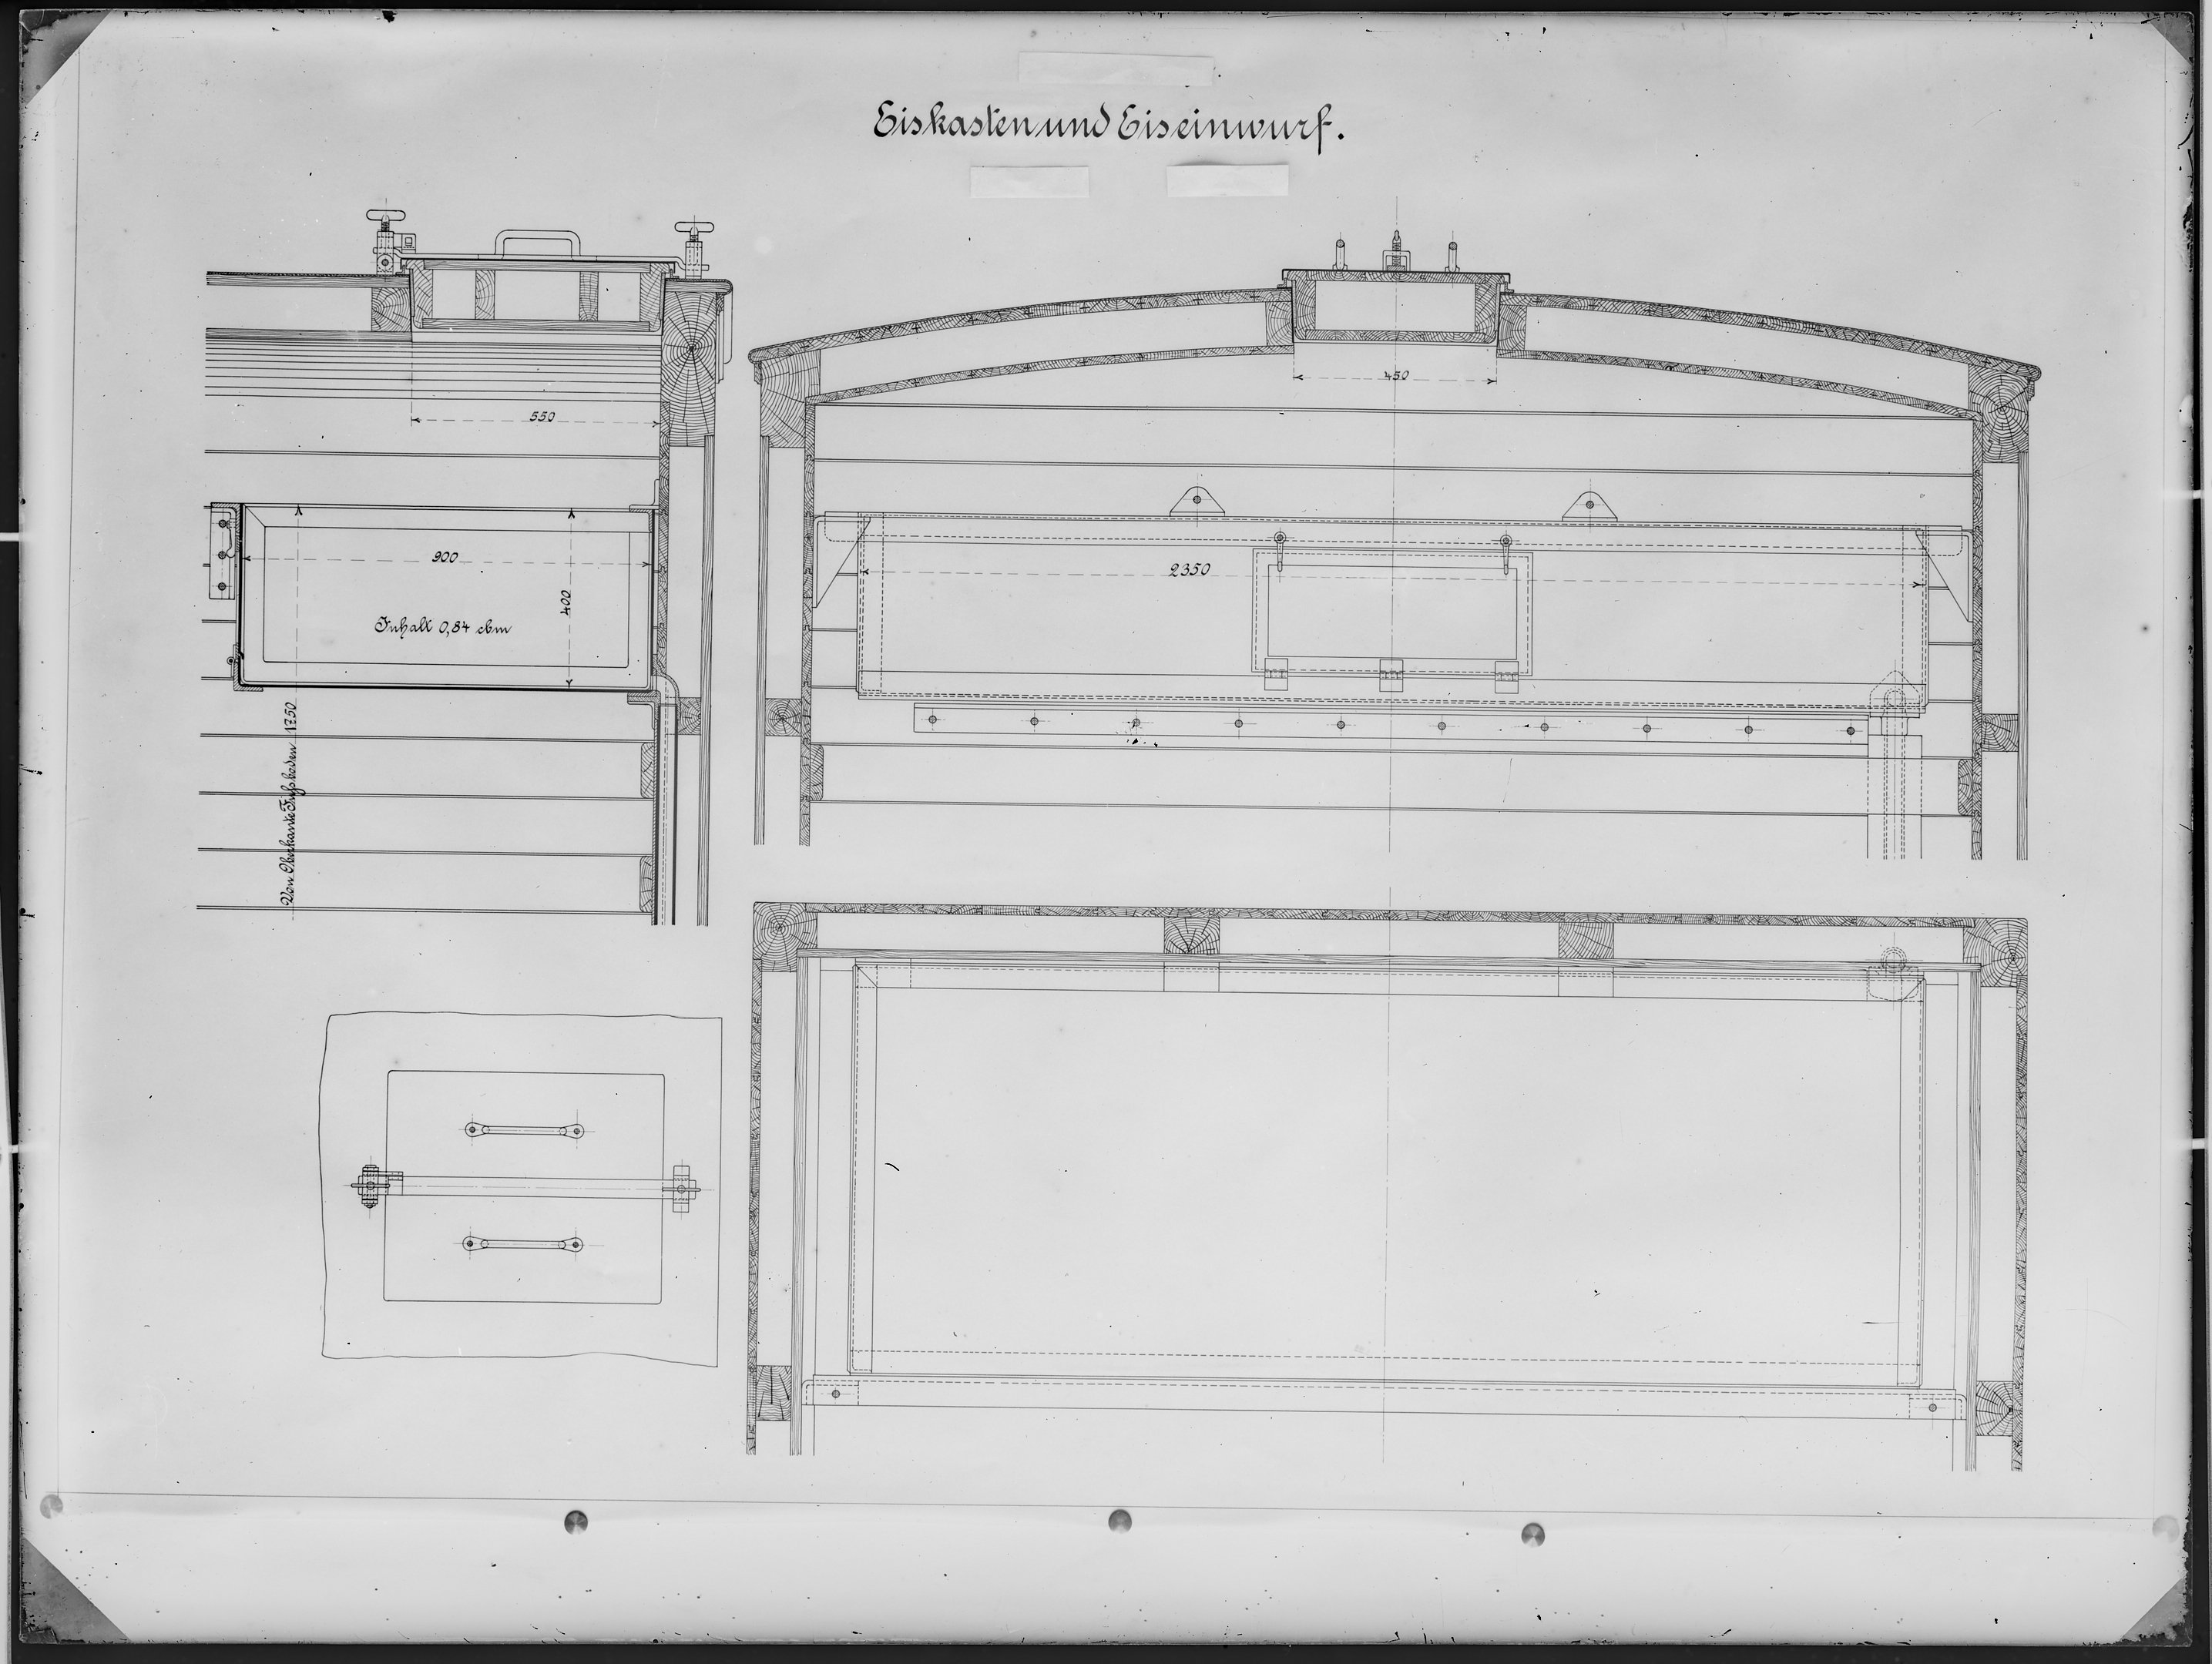 Fotografie: Maßzeichnung eines Eiskastens und Eiseinwurfs vermutlich für Kühlwagen, Herkunft unbekannt, um 1938? (Verkehrsmuseum Dresden CC BY-NC-SA)